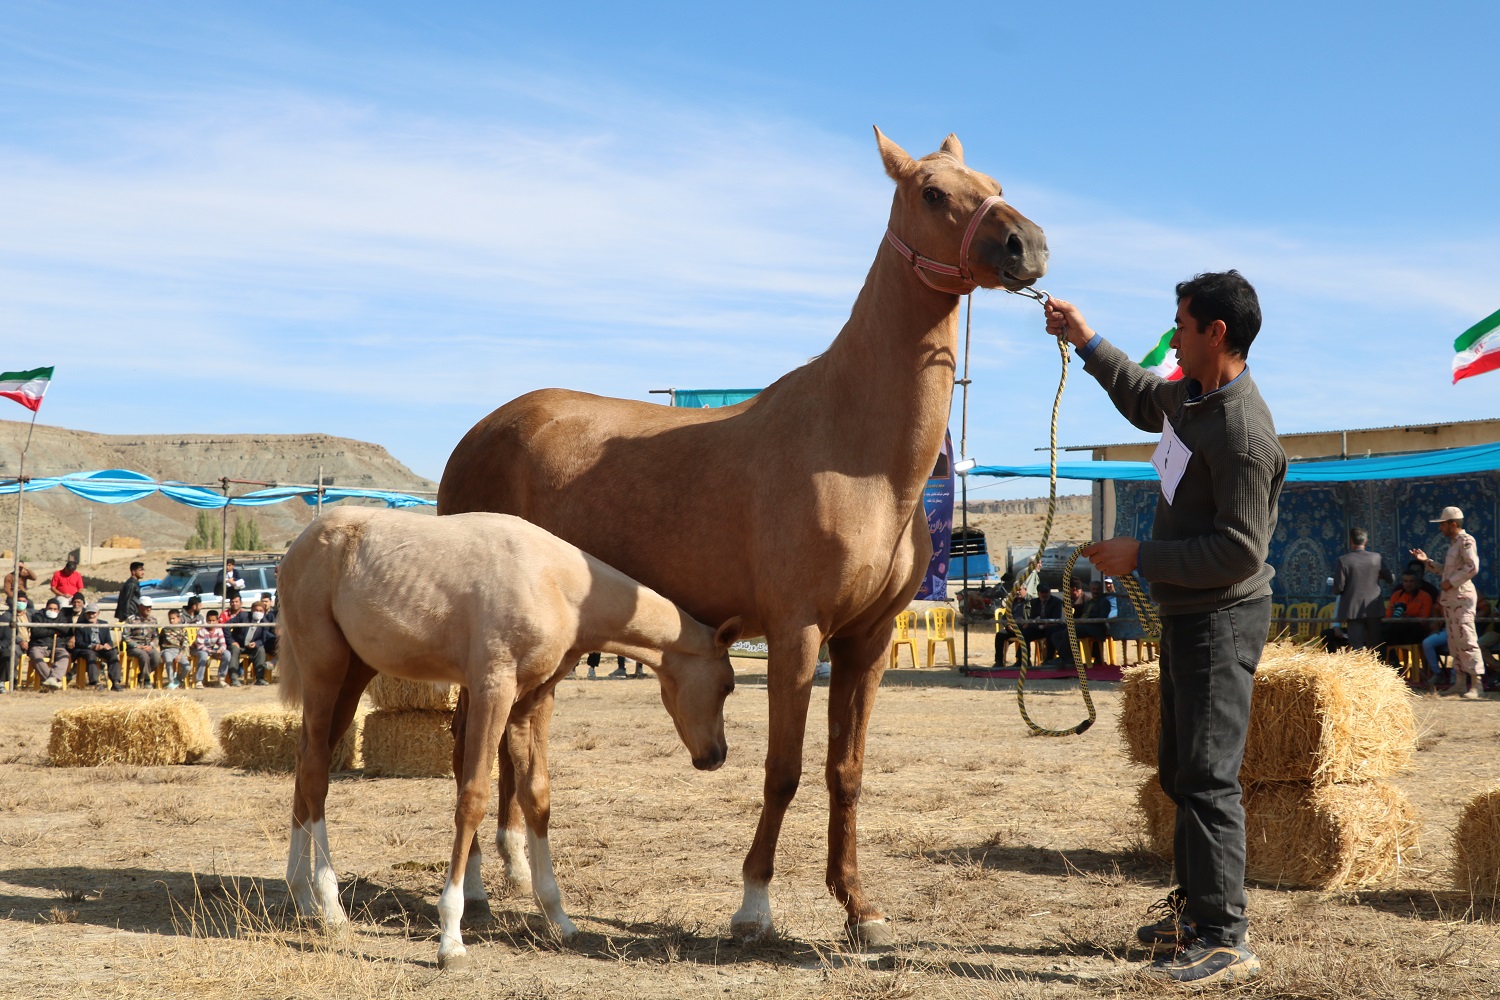 چهارمین جشنواره ملی زیبایی اسب اصیل ترکمن برگزار شد